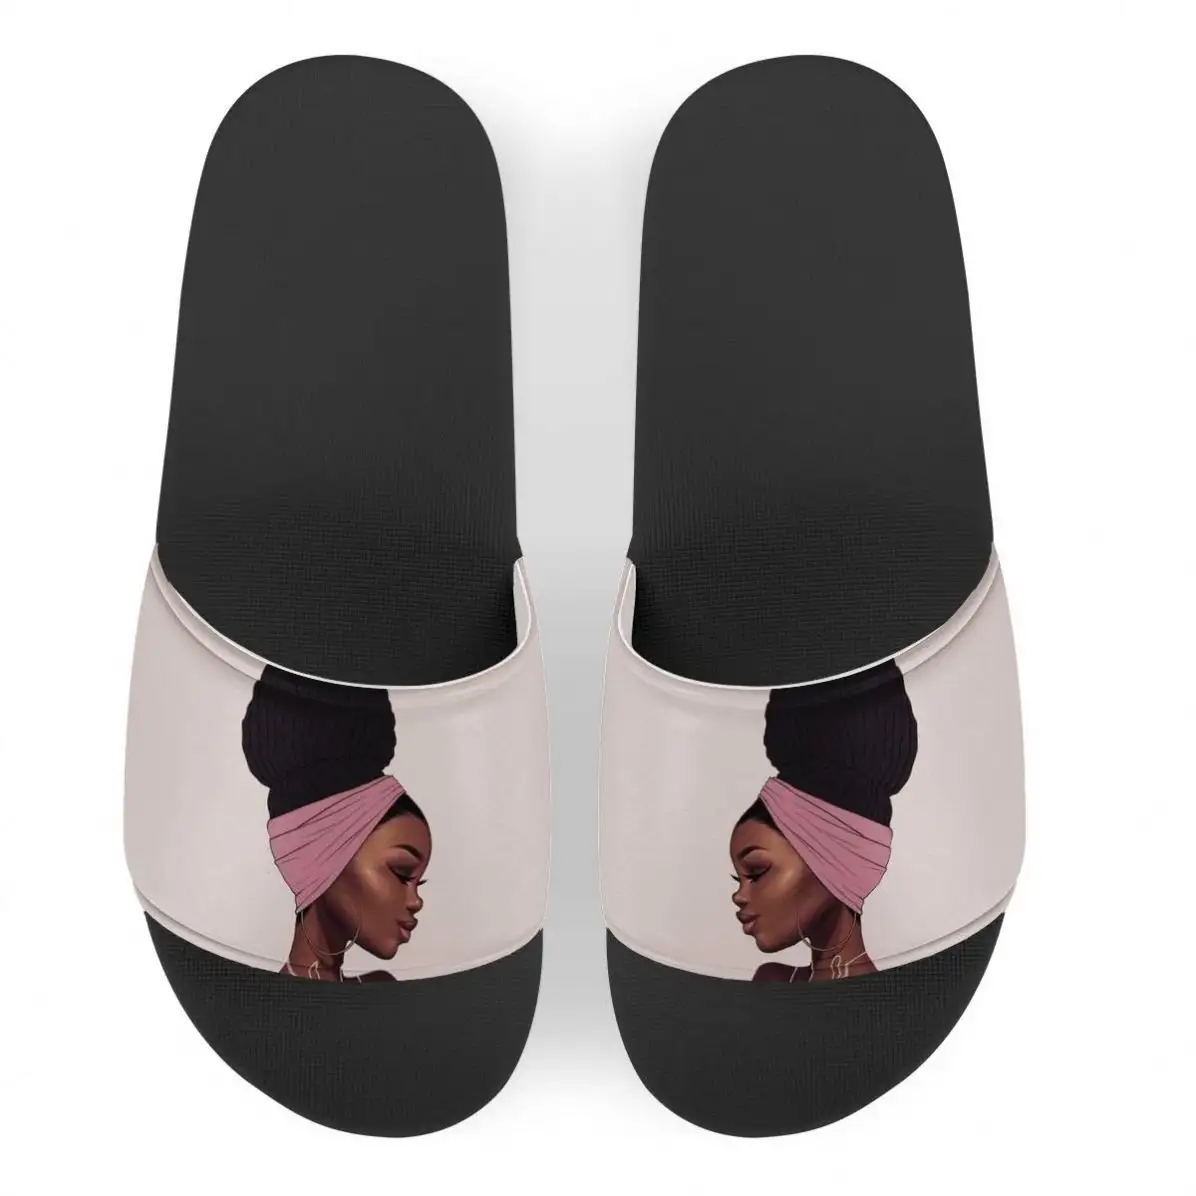 POD Beauté Filles Africaines Motif Pratique Grande Taille Pantoufles D'intérieur Pour Dames Piscine Glissière Sandales Plate-Forme Chaussures Pantoufles